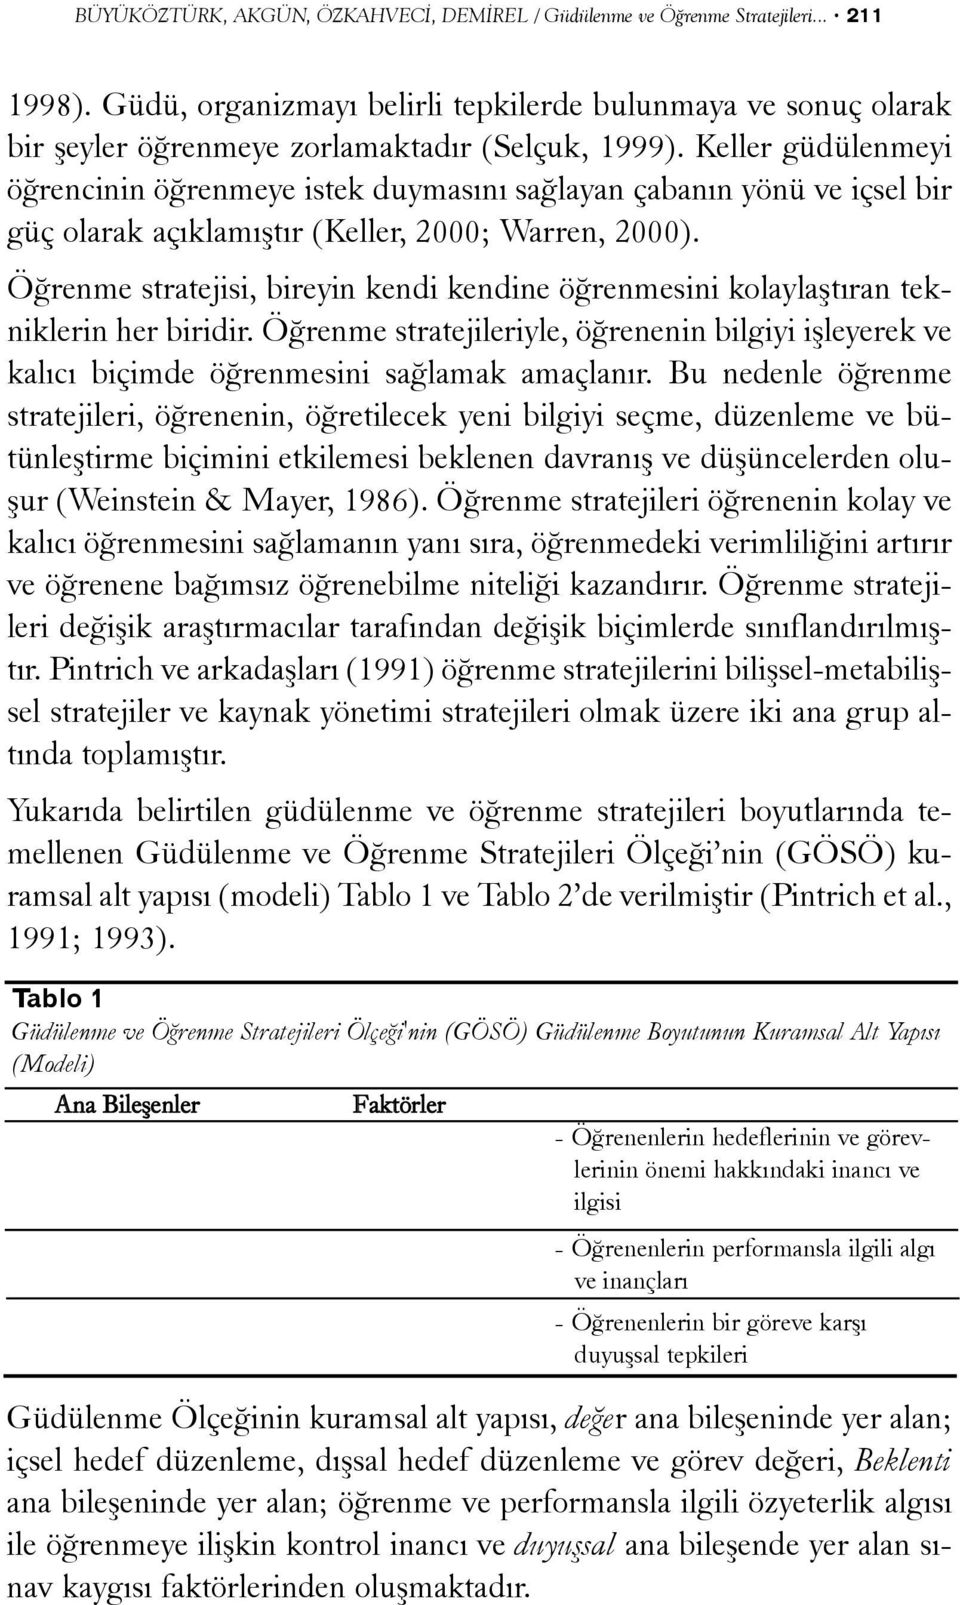 Keller güdülenmeyi öðrencinin öðrenmeye istek duymasýný saðlayan çabanýn yönü ve içsel bir güç olarak açýklamýþtýr (Keller, 2000; Warren, 2000).